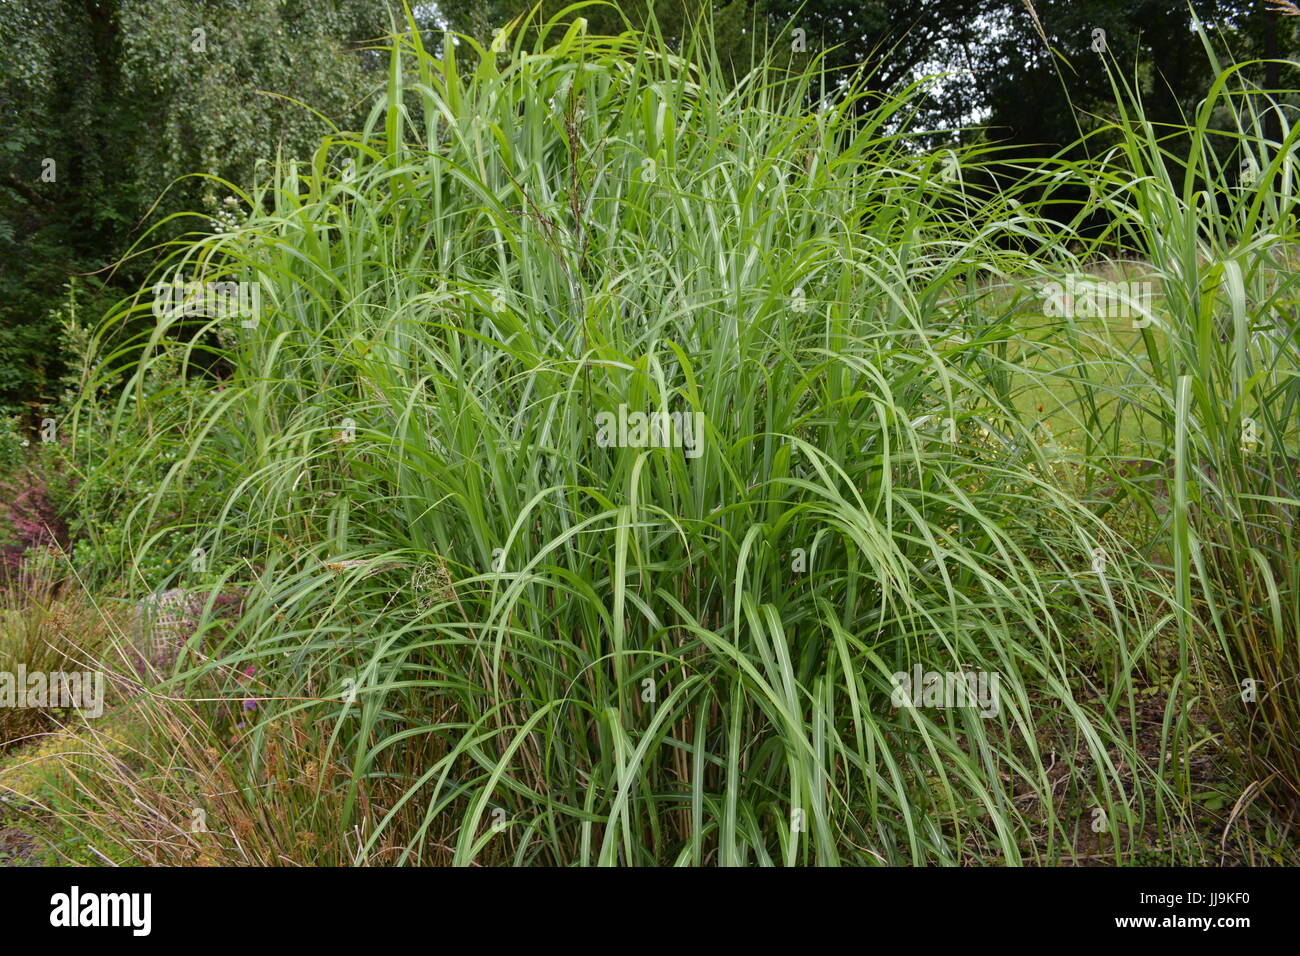 Tall decorative miscanthus sinensis graziella ornamental grass in garden setting Stock Photo